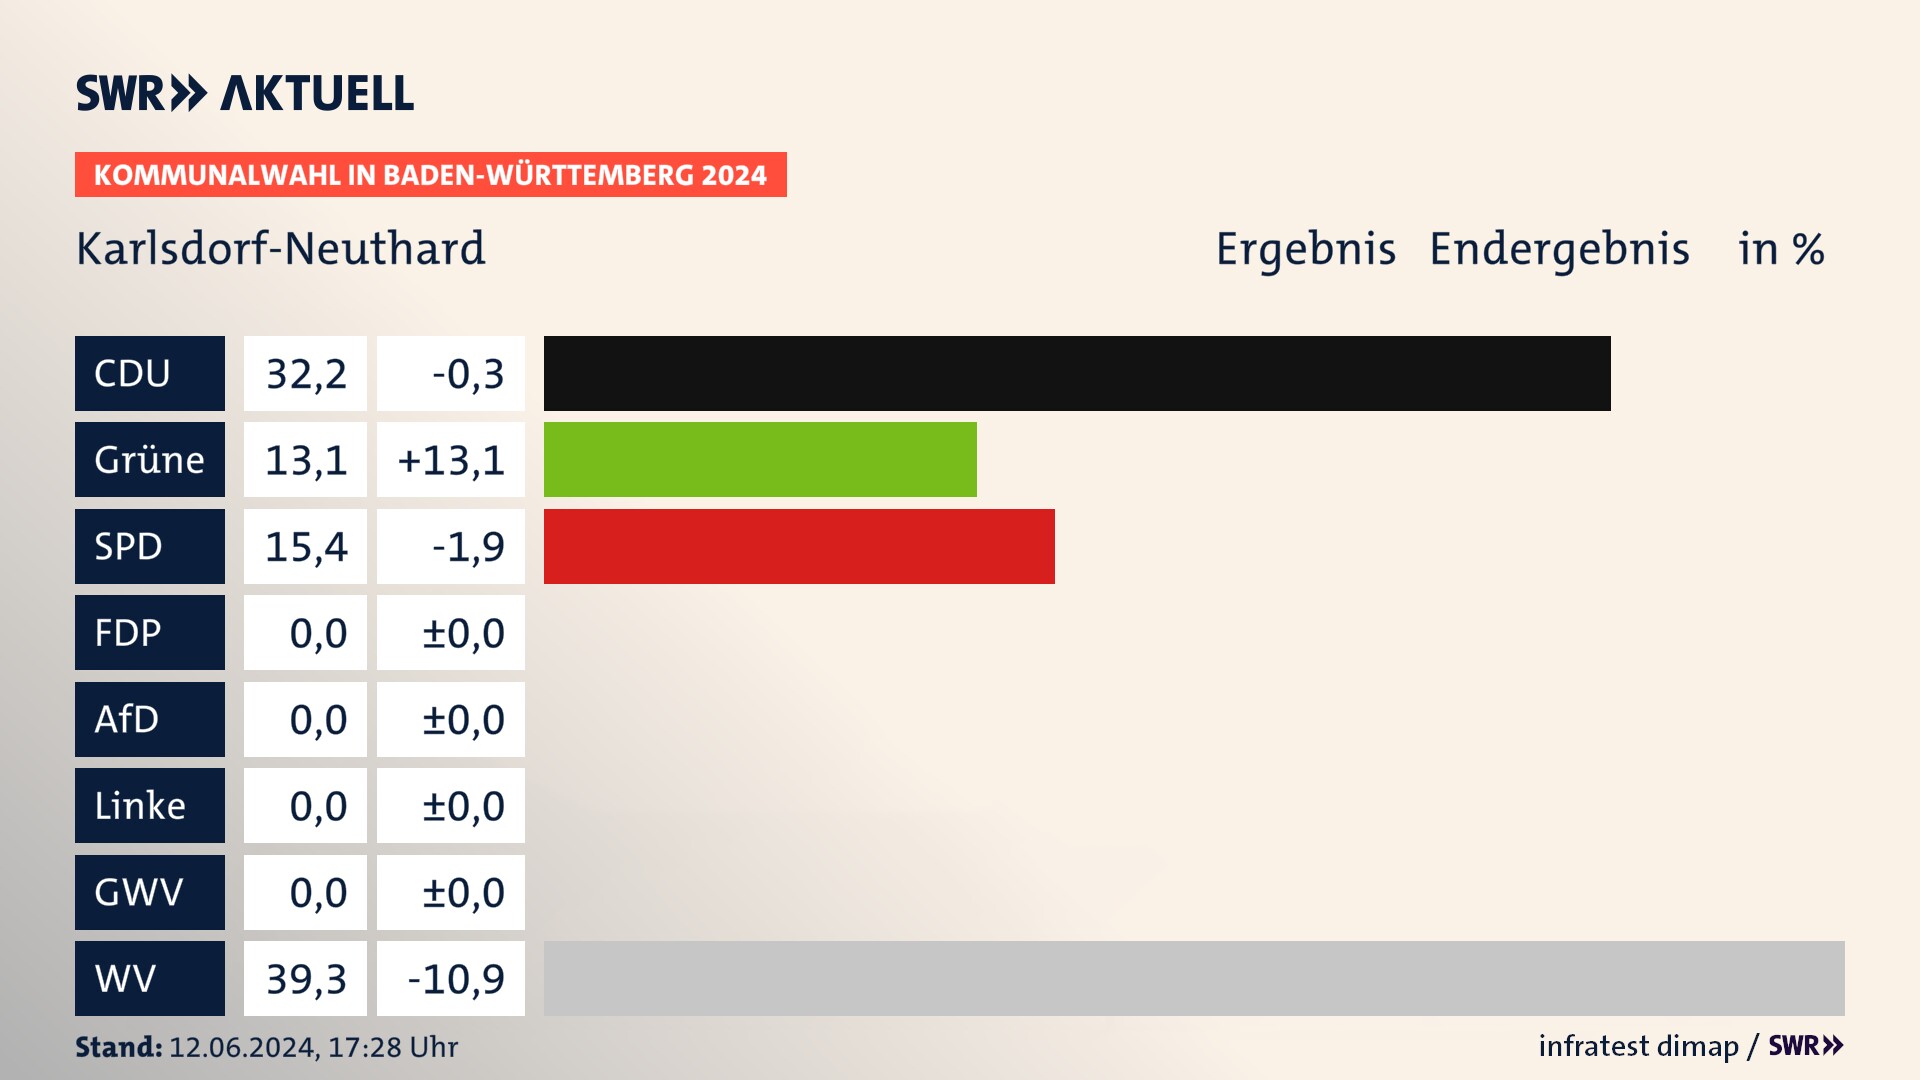 Kommunalwahl 2024 Endergebnis Zweitstimme für Karlsdorf-Neuthard. In Karlsdorf-Neuthard erzielt die CDU 32,2 Prozent der gültigen  Stimmen. Die Grünen landen bei 13,1 Prozent. Die SPD erreicht 15,4 Prozent. Die Wählervereinigungen kommen auf 39,3 Prozent.